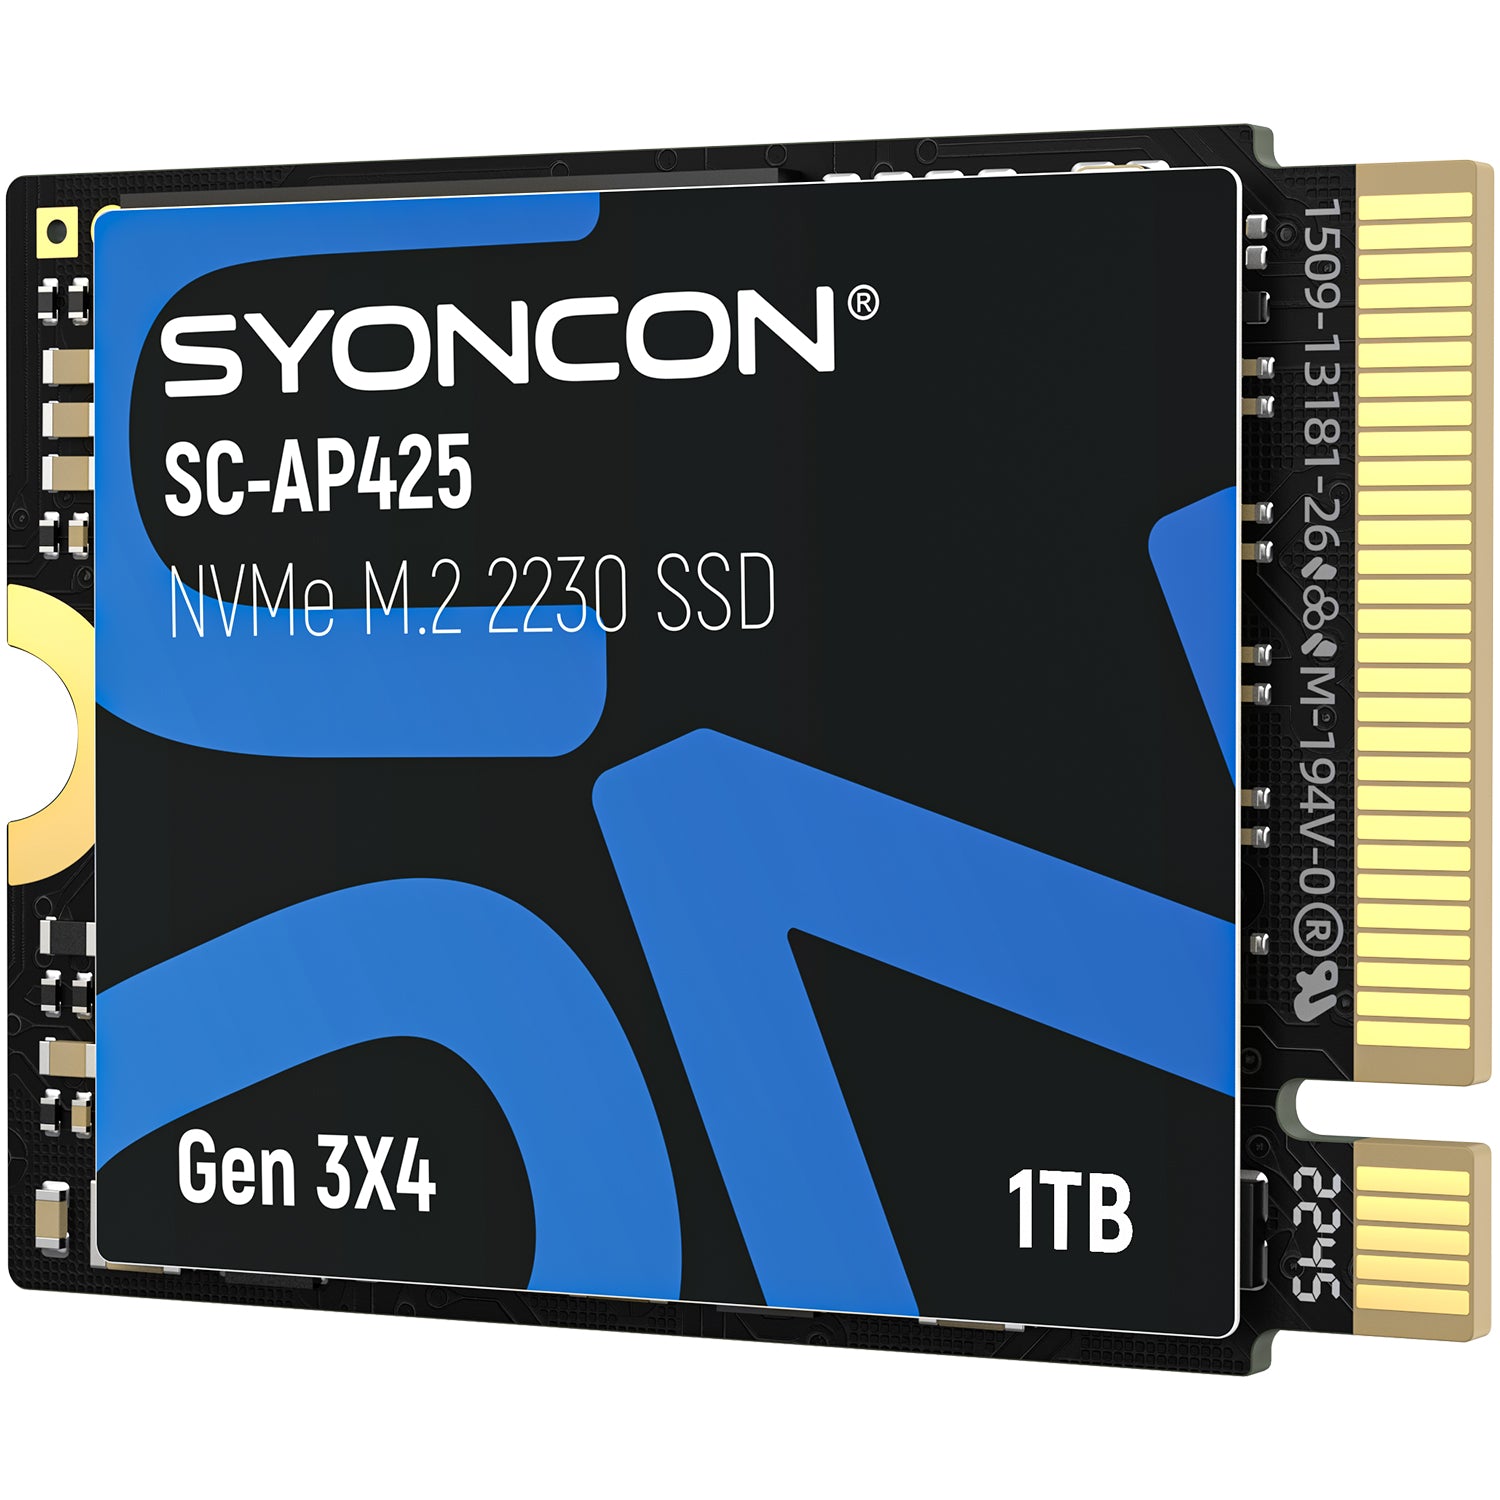 SYONCON 2230 SSD 512GB